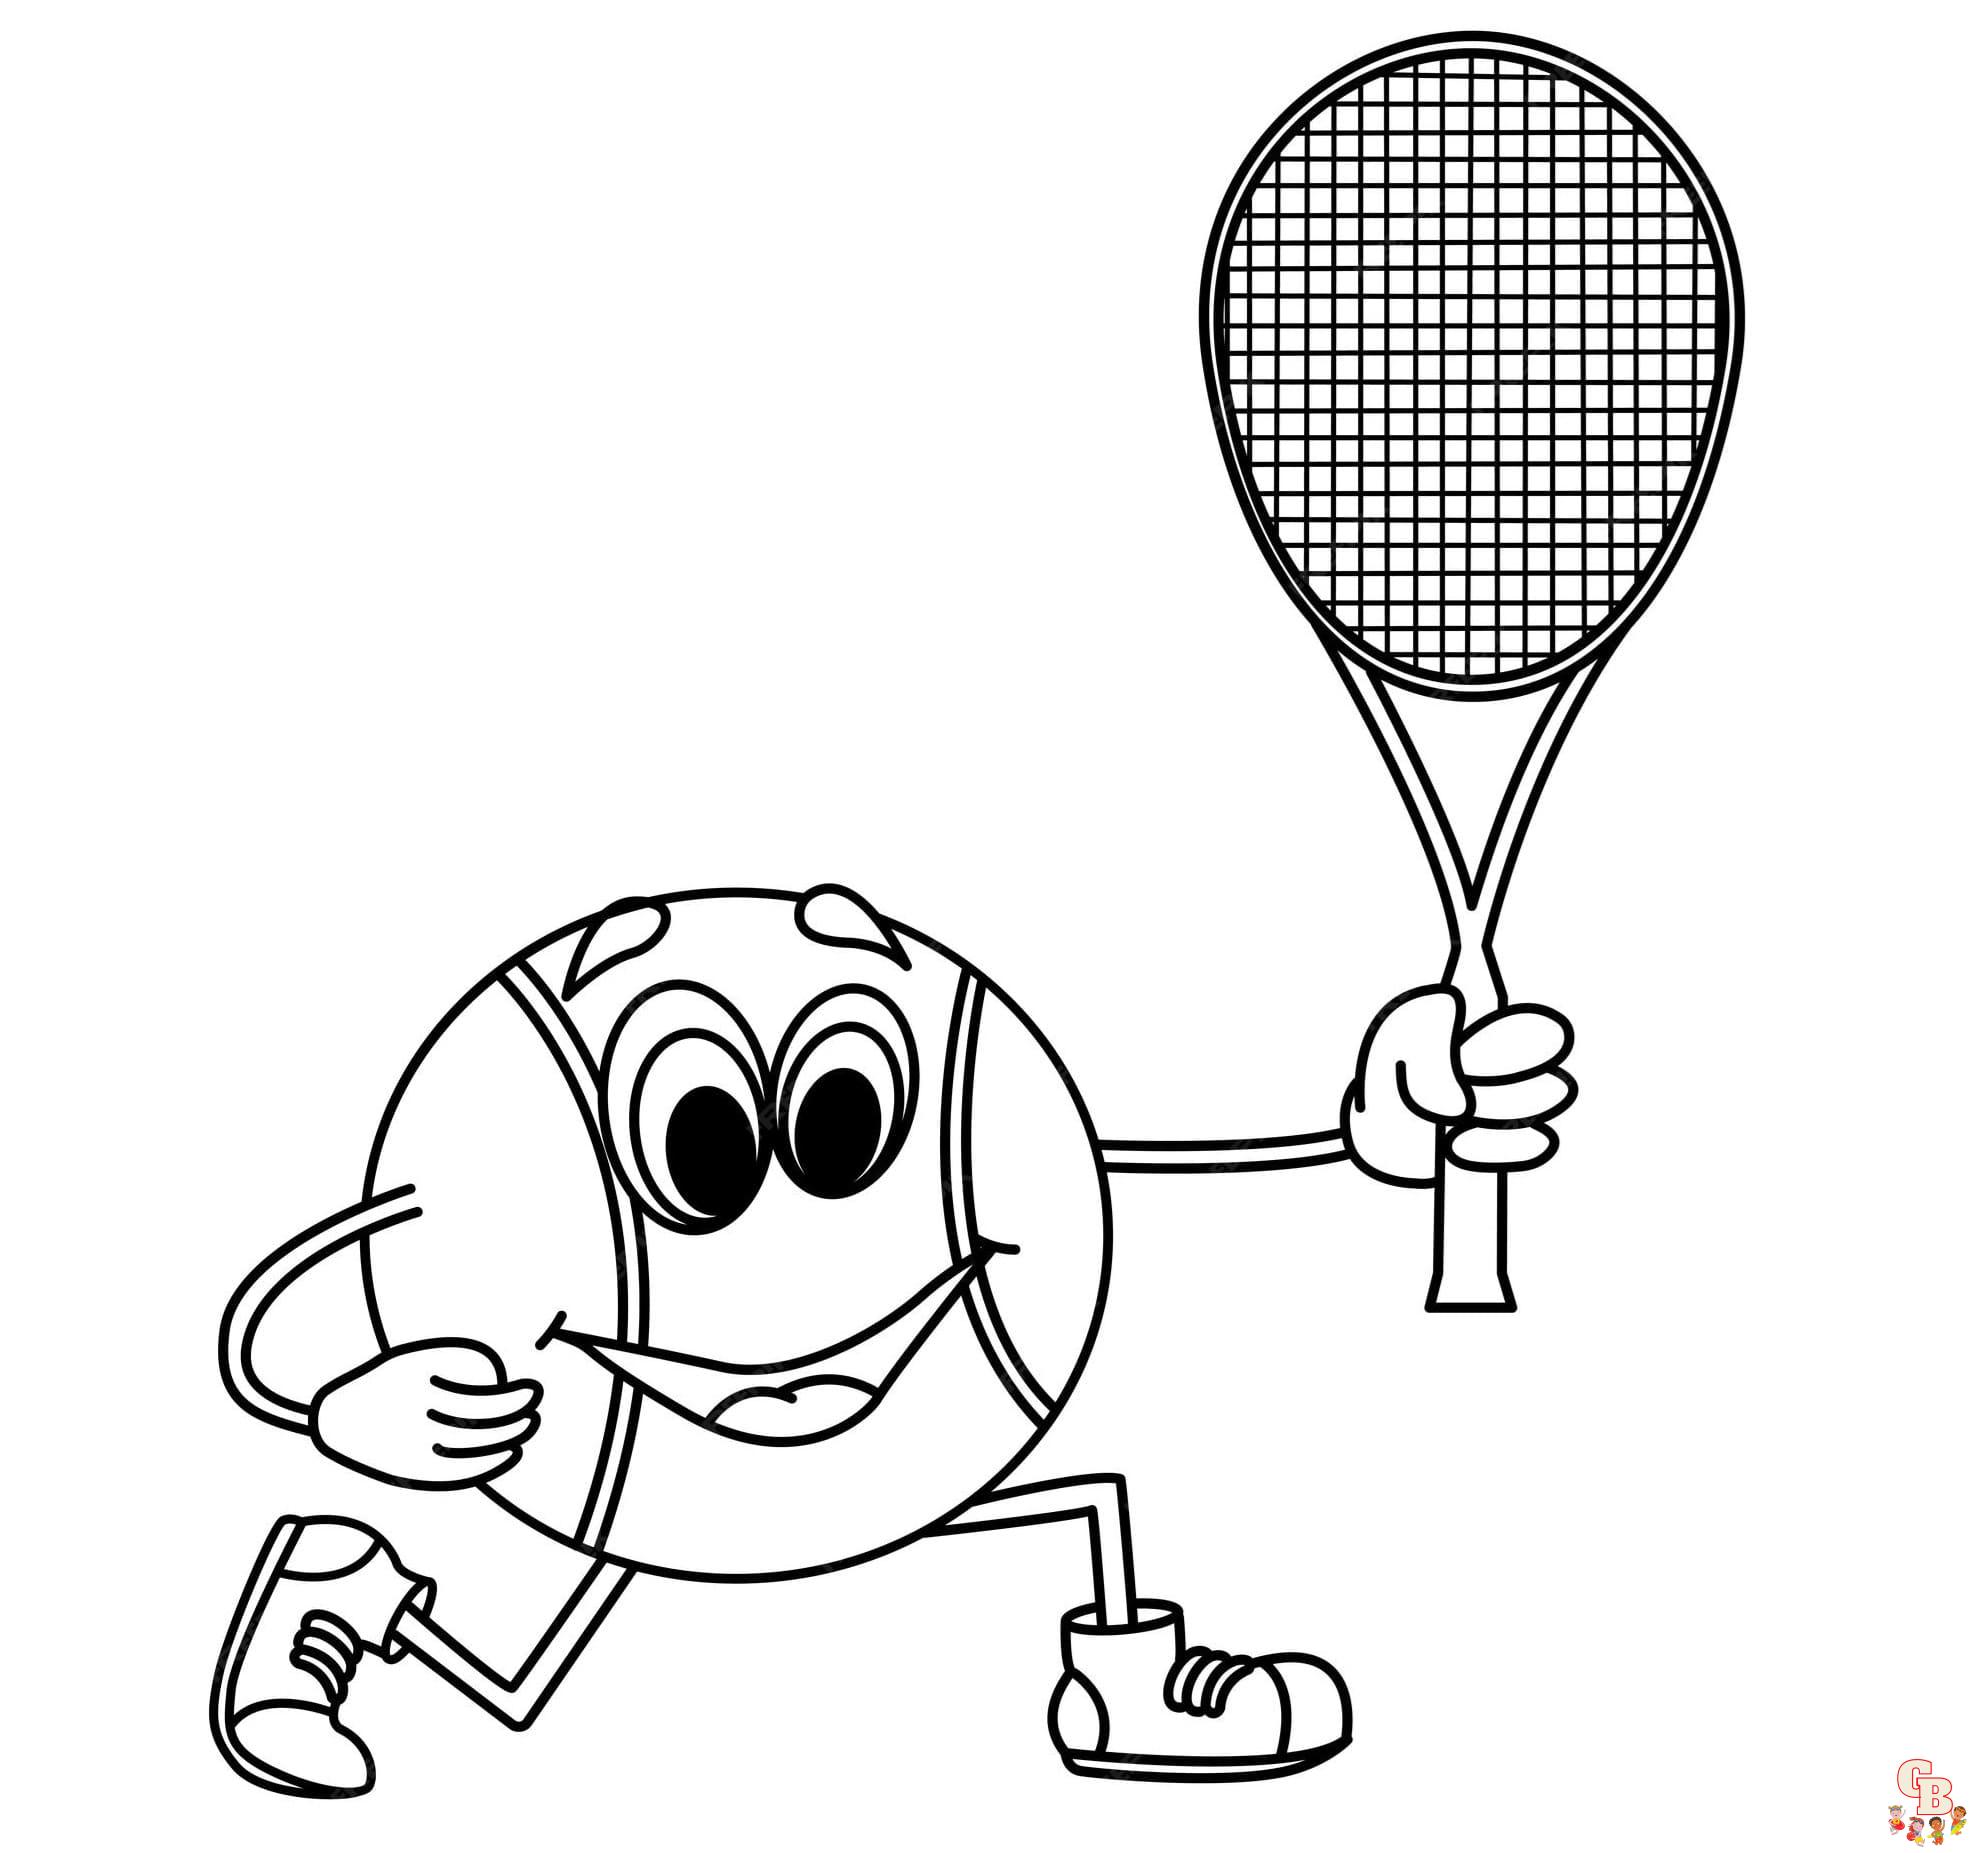 Coloriage de tennis gratuit pour les enfants